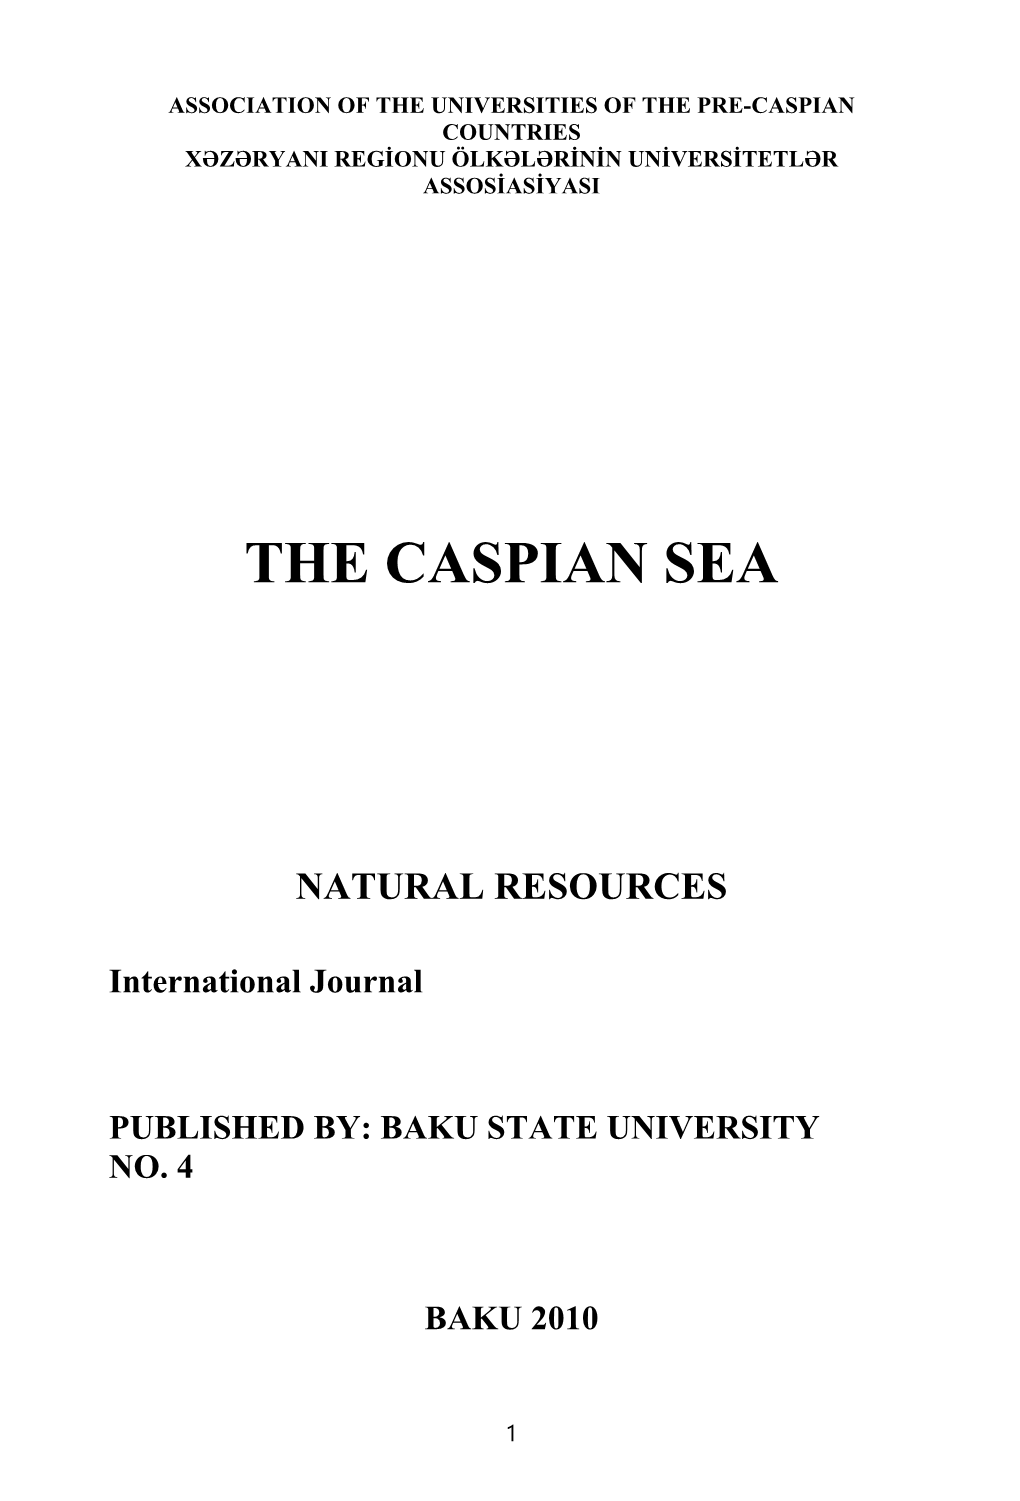 Association of the Universities of the Pre-Caspian Countries Xəzəryani Regionu Ölkələrinin Universitetlər Assosiasiyasi